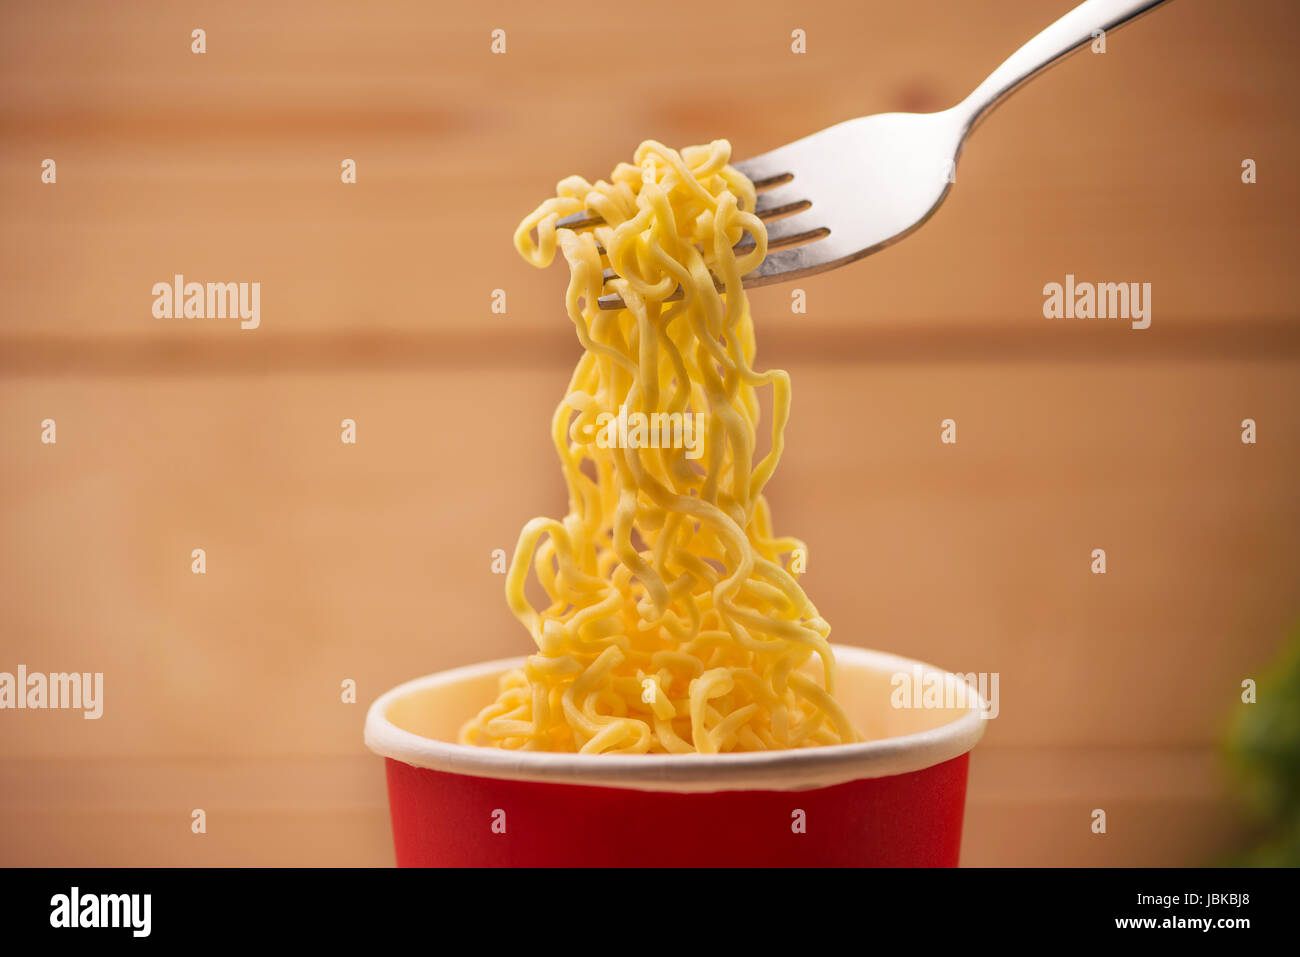 Mangiare spaghetti istantanei in tazza con una forcella Foto Stock